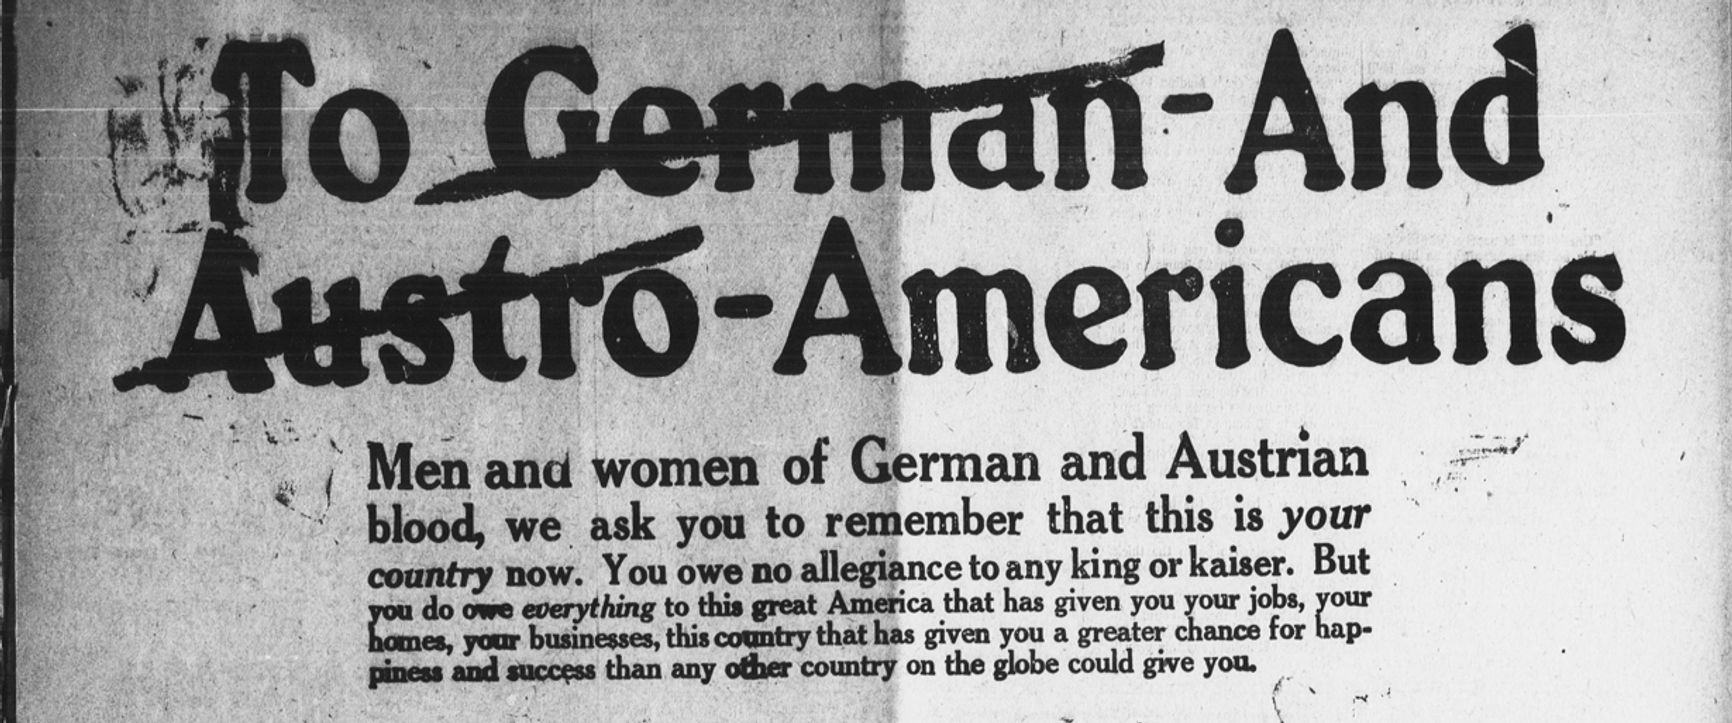 Часть рекламы Liberty Bond, в которой американцев немецкого и австрийского происхождения убеждают в лояльности Соединенным Штатам.